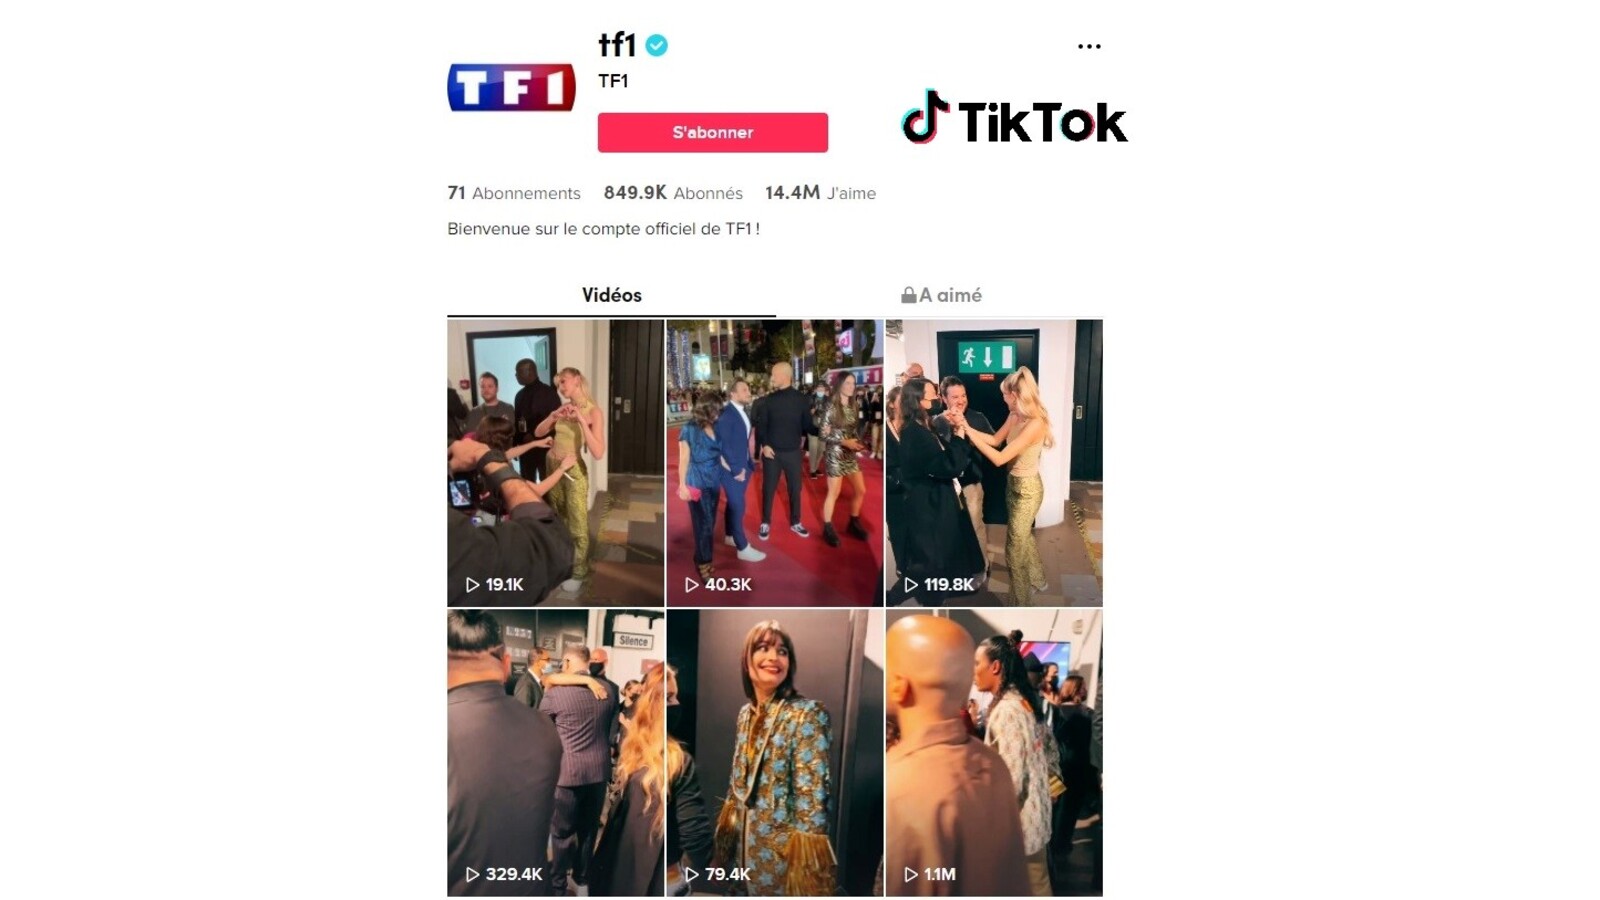 TF1, M6, Arte... le monde du petit écran de plus en plus présent sur TikTok